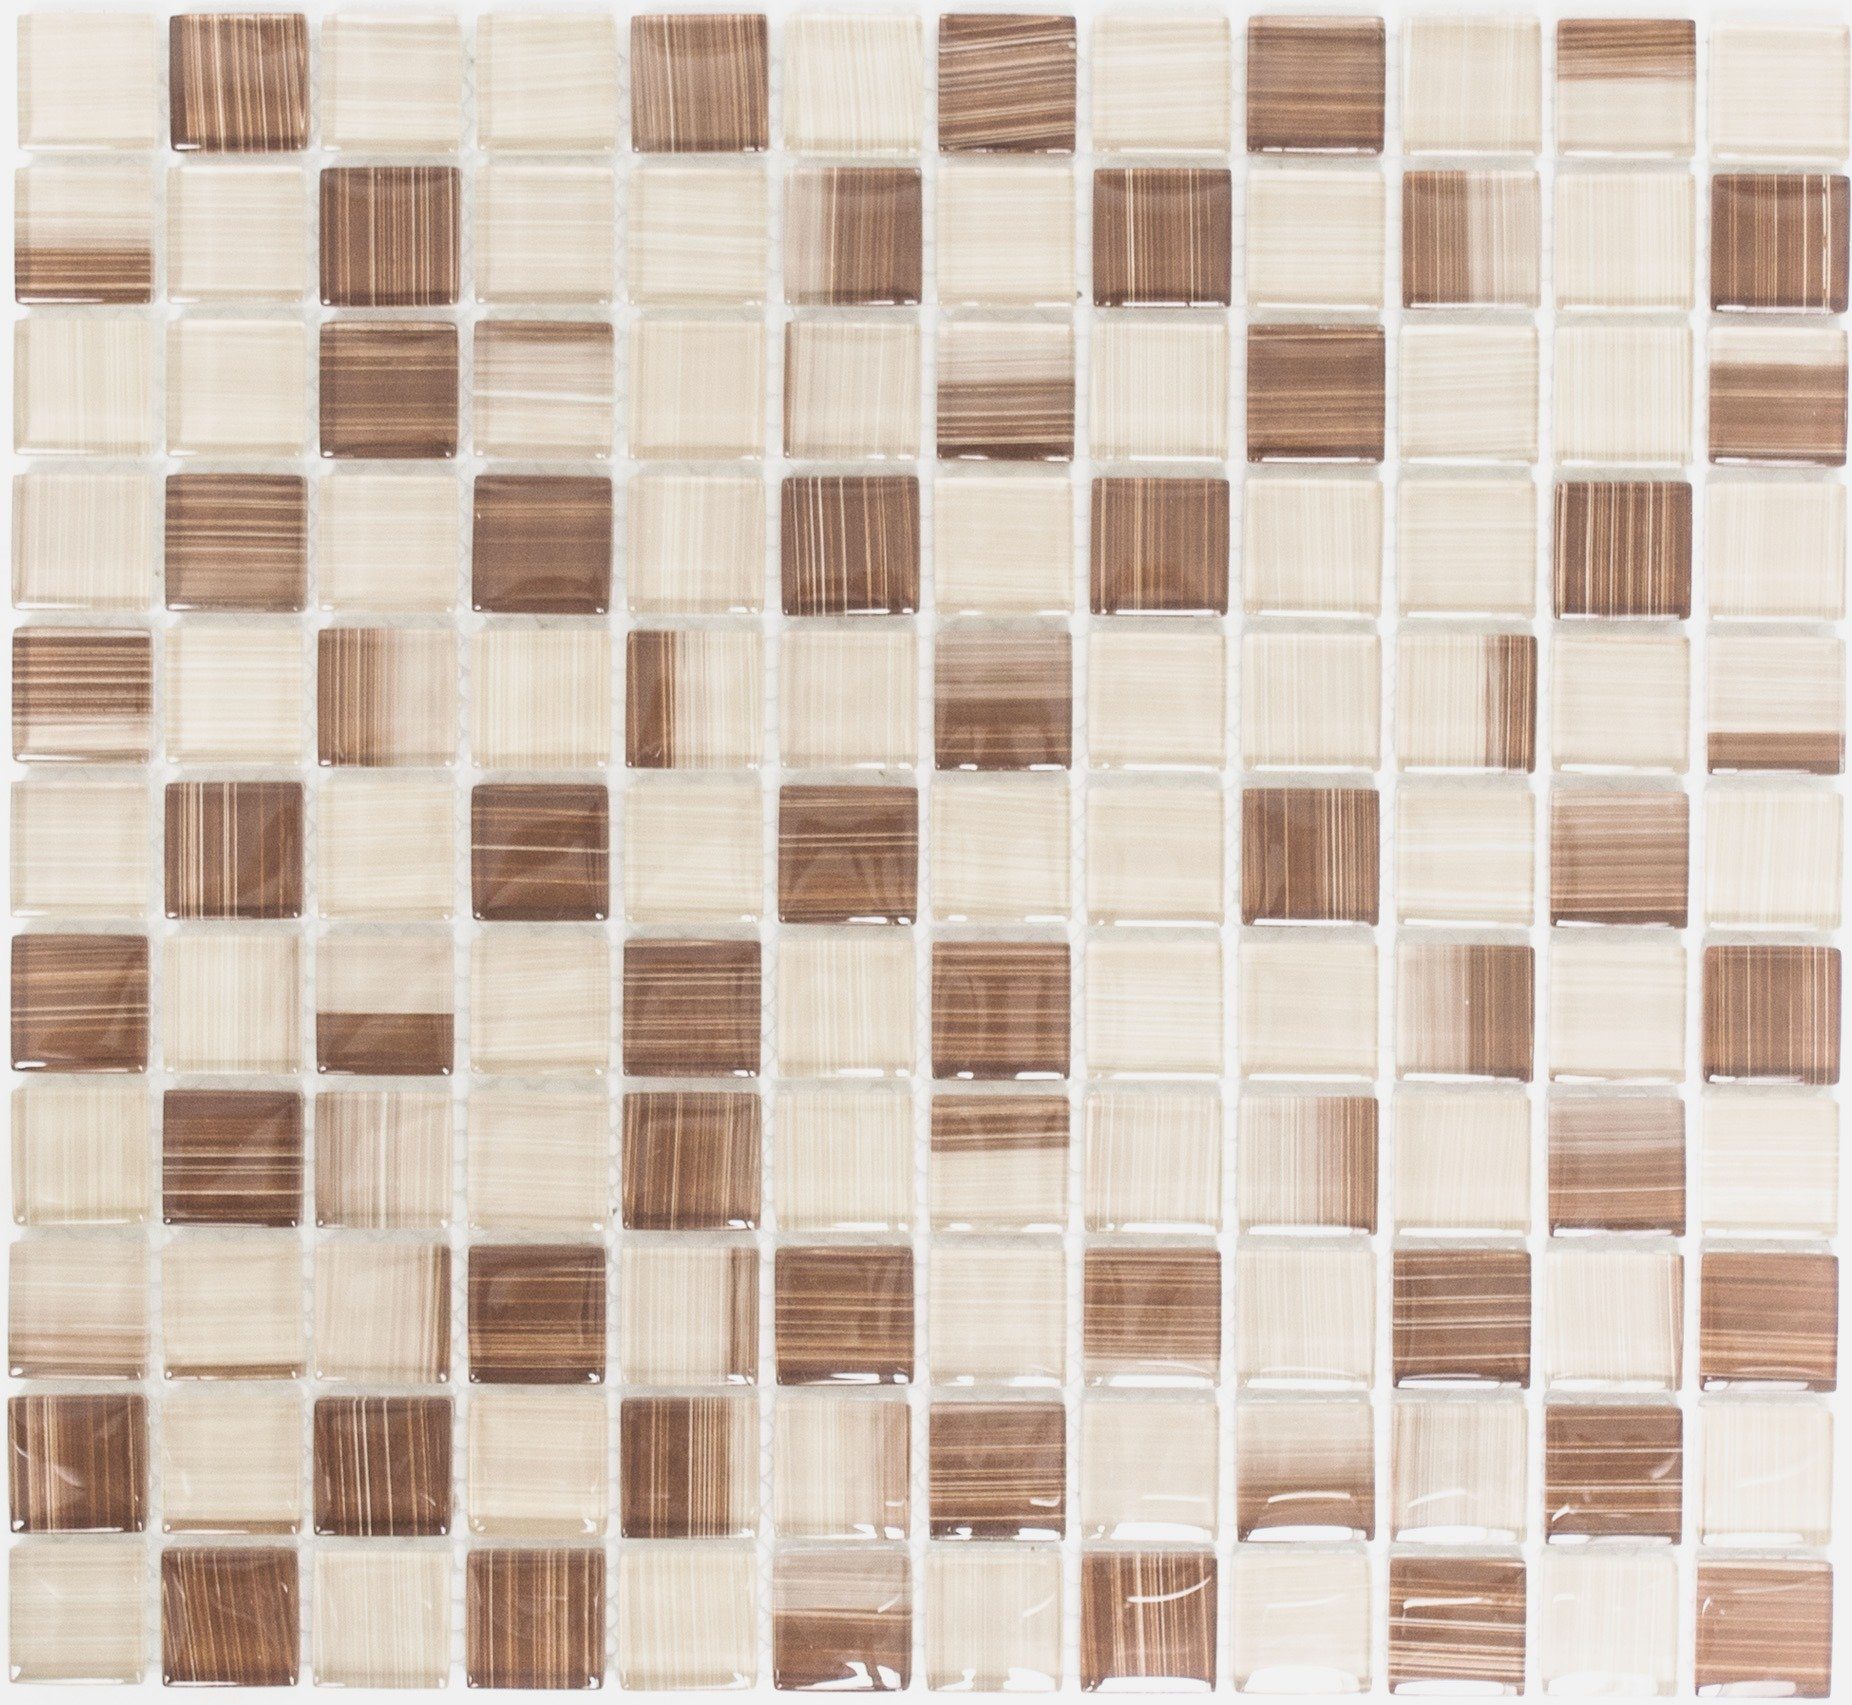 Mosani Mosaikfliesen Glasmosaik Mosaikfliese Style beige braun Küchenrückwand